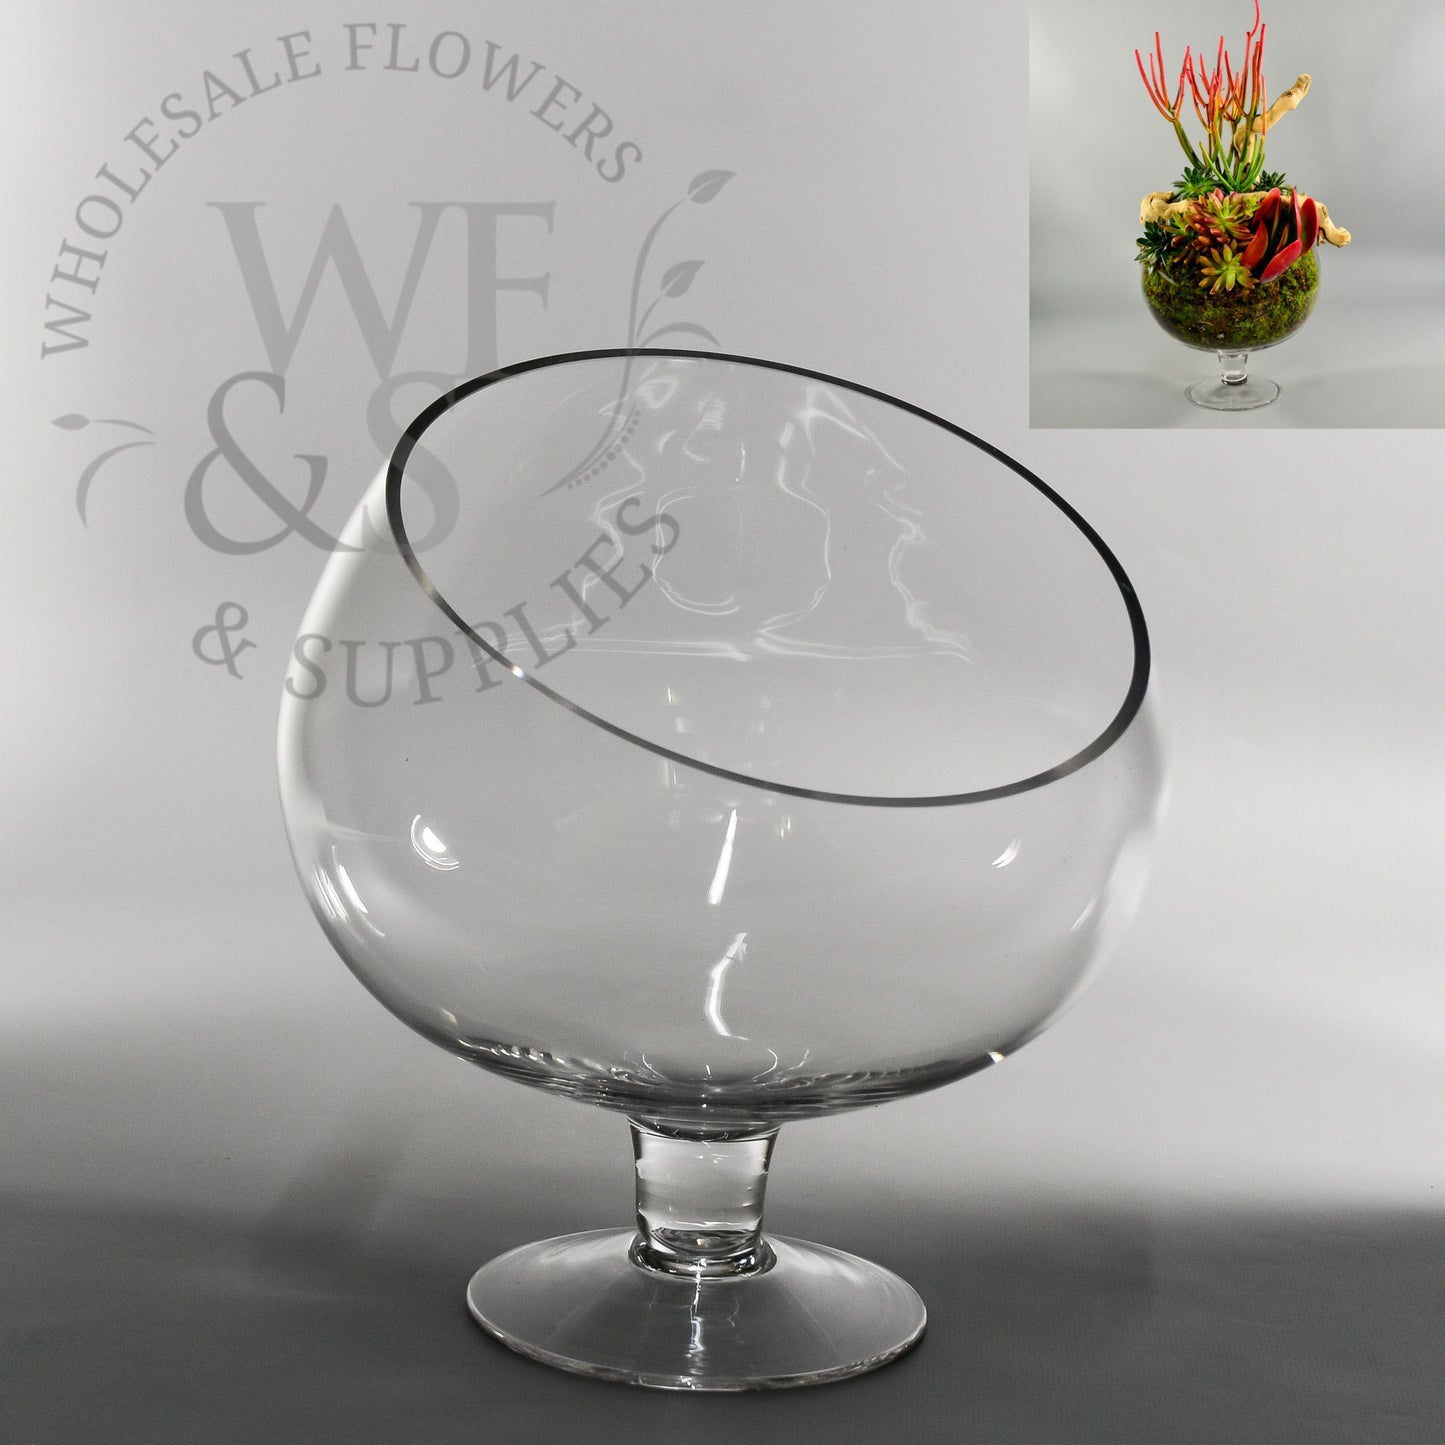 10" Tall Glass Bowl Vase on Stem